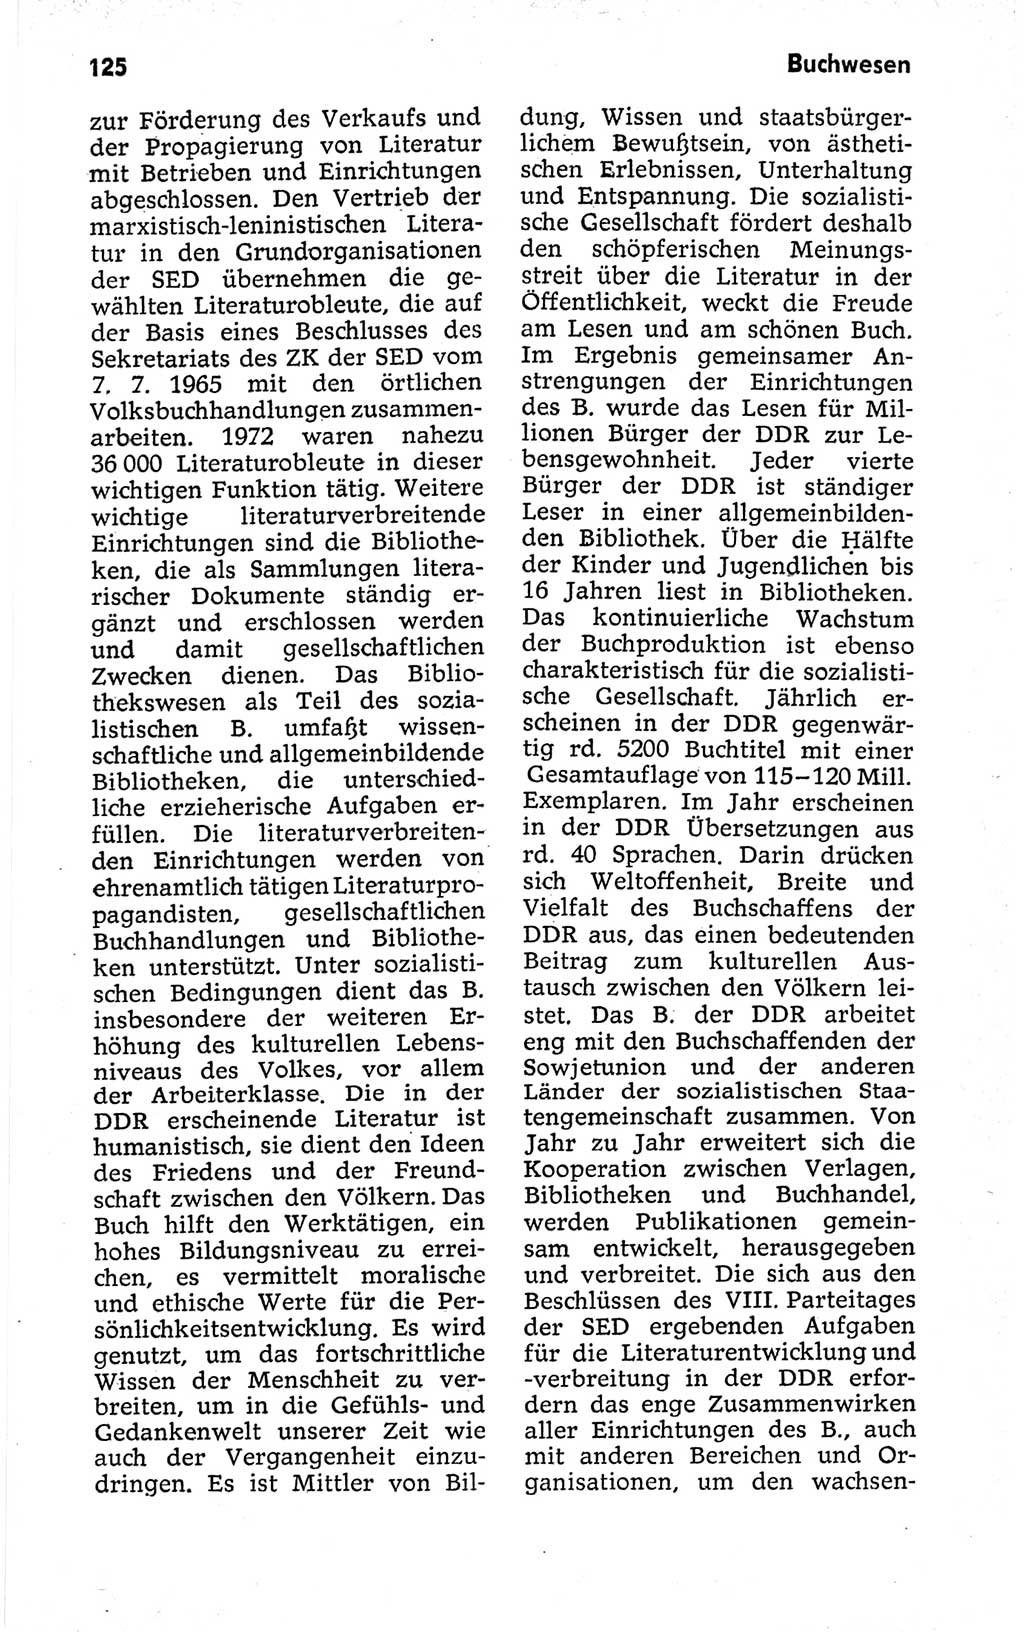 Kleines politisches Wörterbuch [Deutsche Demokratische Republik (DDR)] 1973, Seite 125 (Kl. pol. Wb. DDR 1973, S. 125)